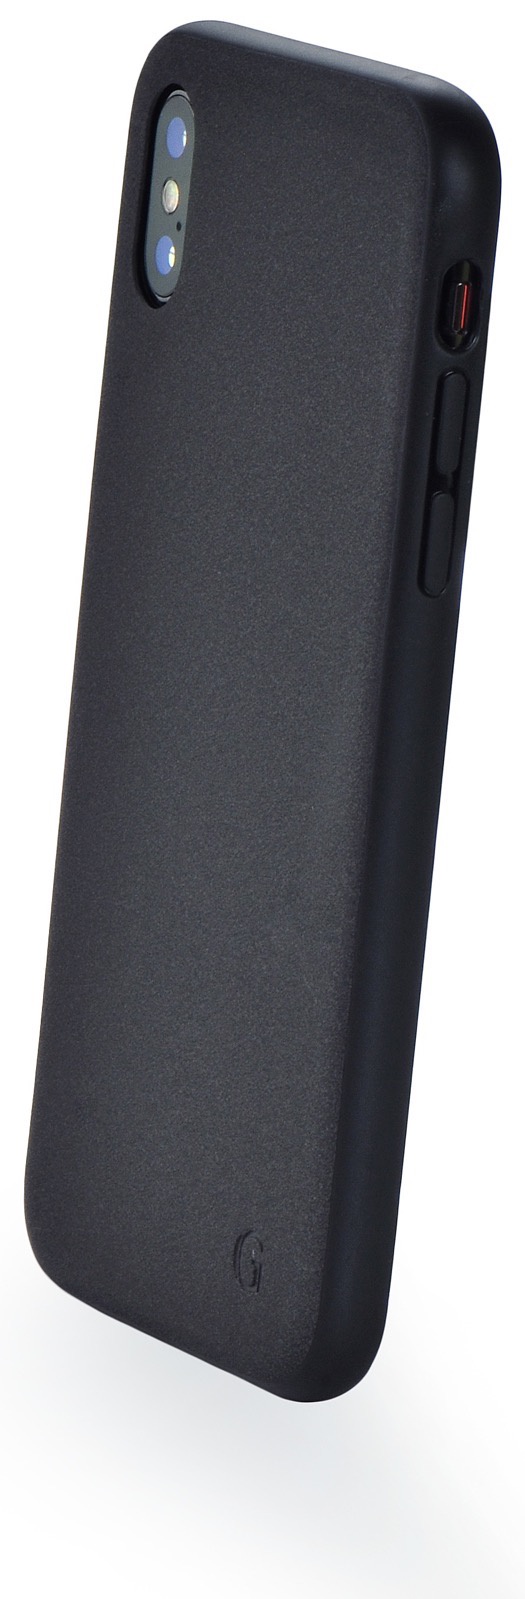 Чехол для сотового телефона Gurdini Grand Eco Series black GGESBK-XS для Apple iPhone X/XS 5.8